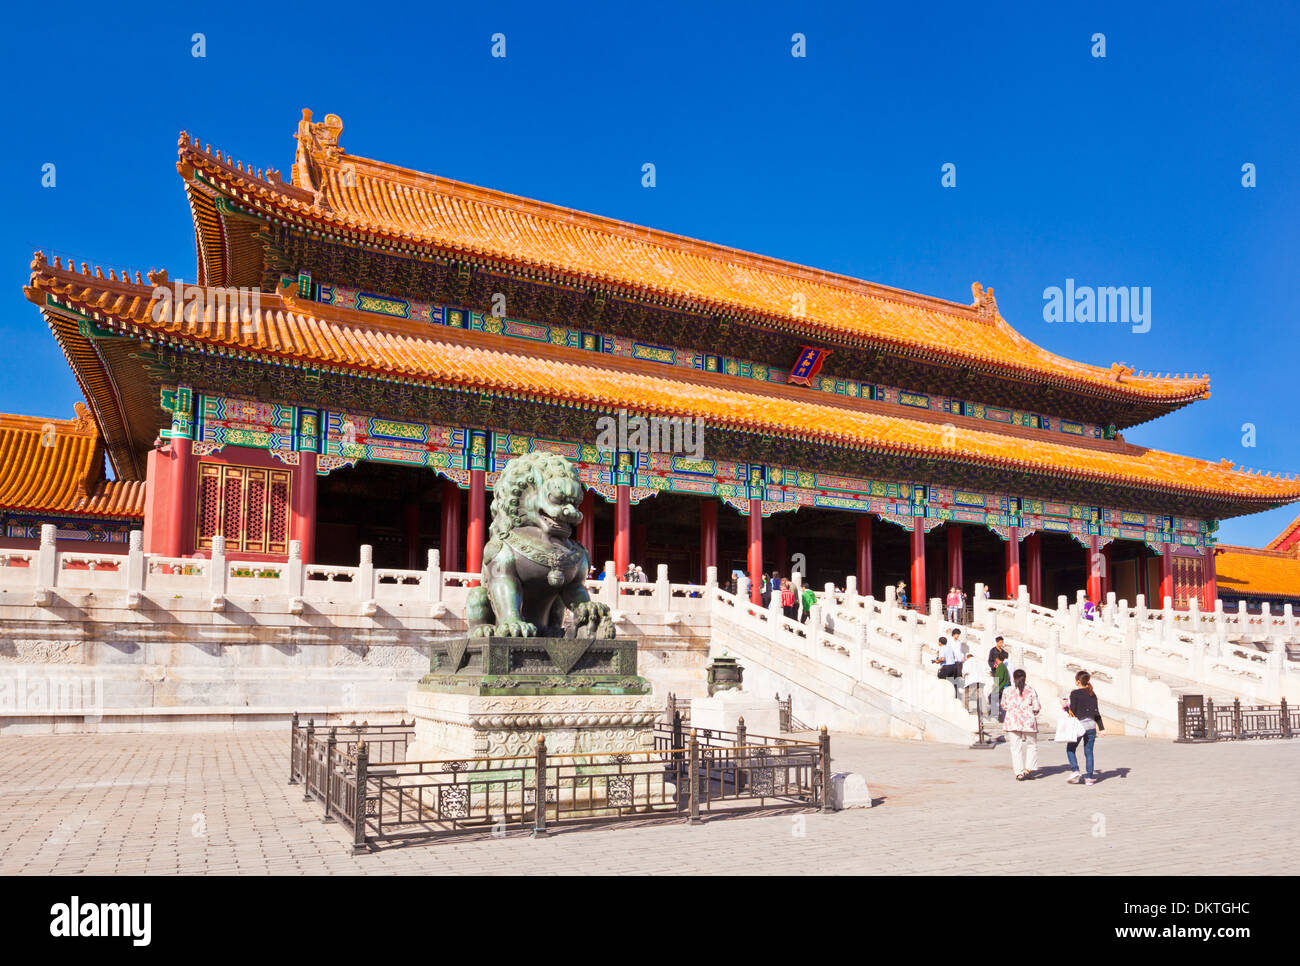 Homme lion de bronze en face de la porte de l'harmonie suprême cour extérieure Forbidden City Beijing République populaire de Chine Chine Asie Banque D'Images